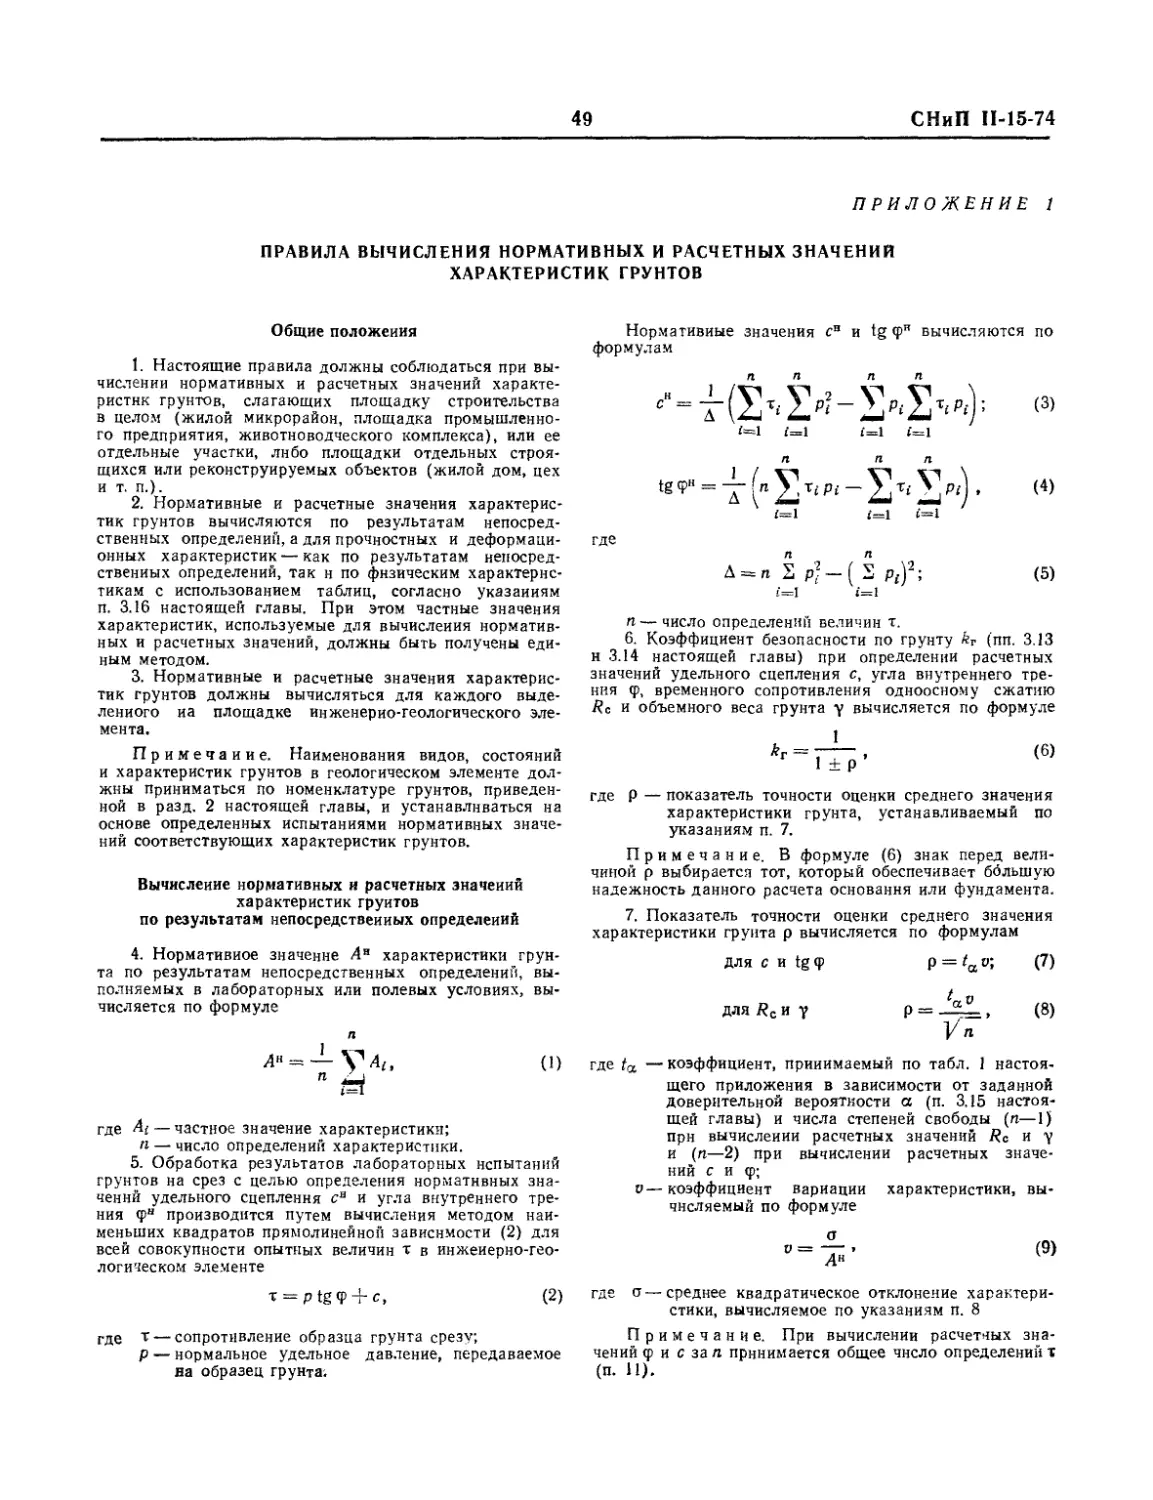 Приложение 1. Правила вычисления нормативных и расчетных значений характеристик грунтов